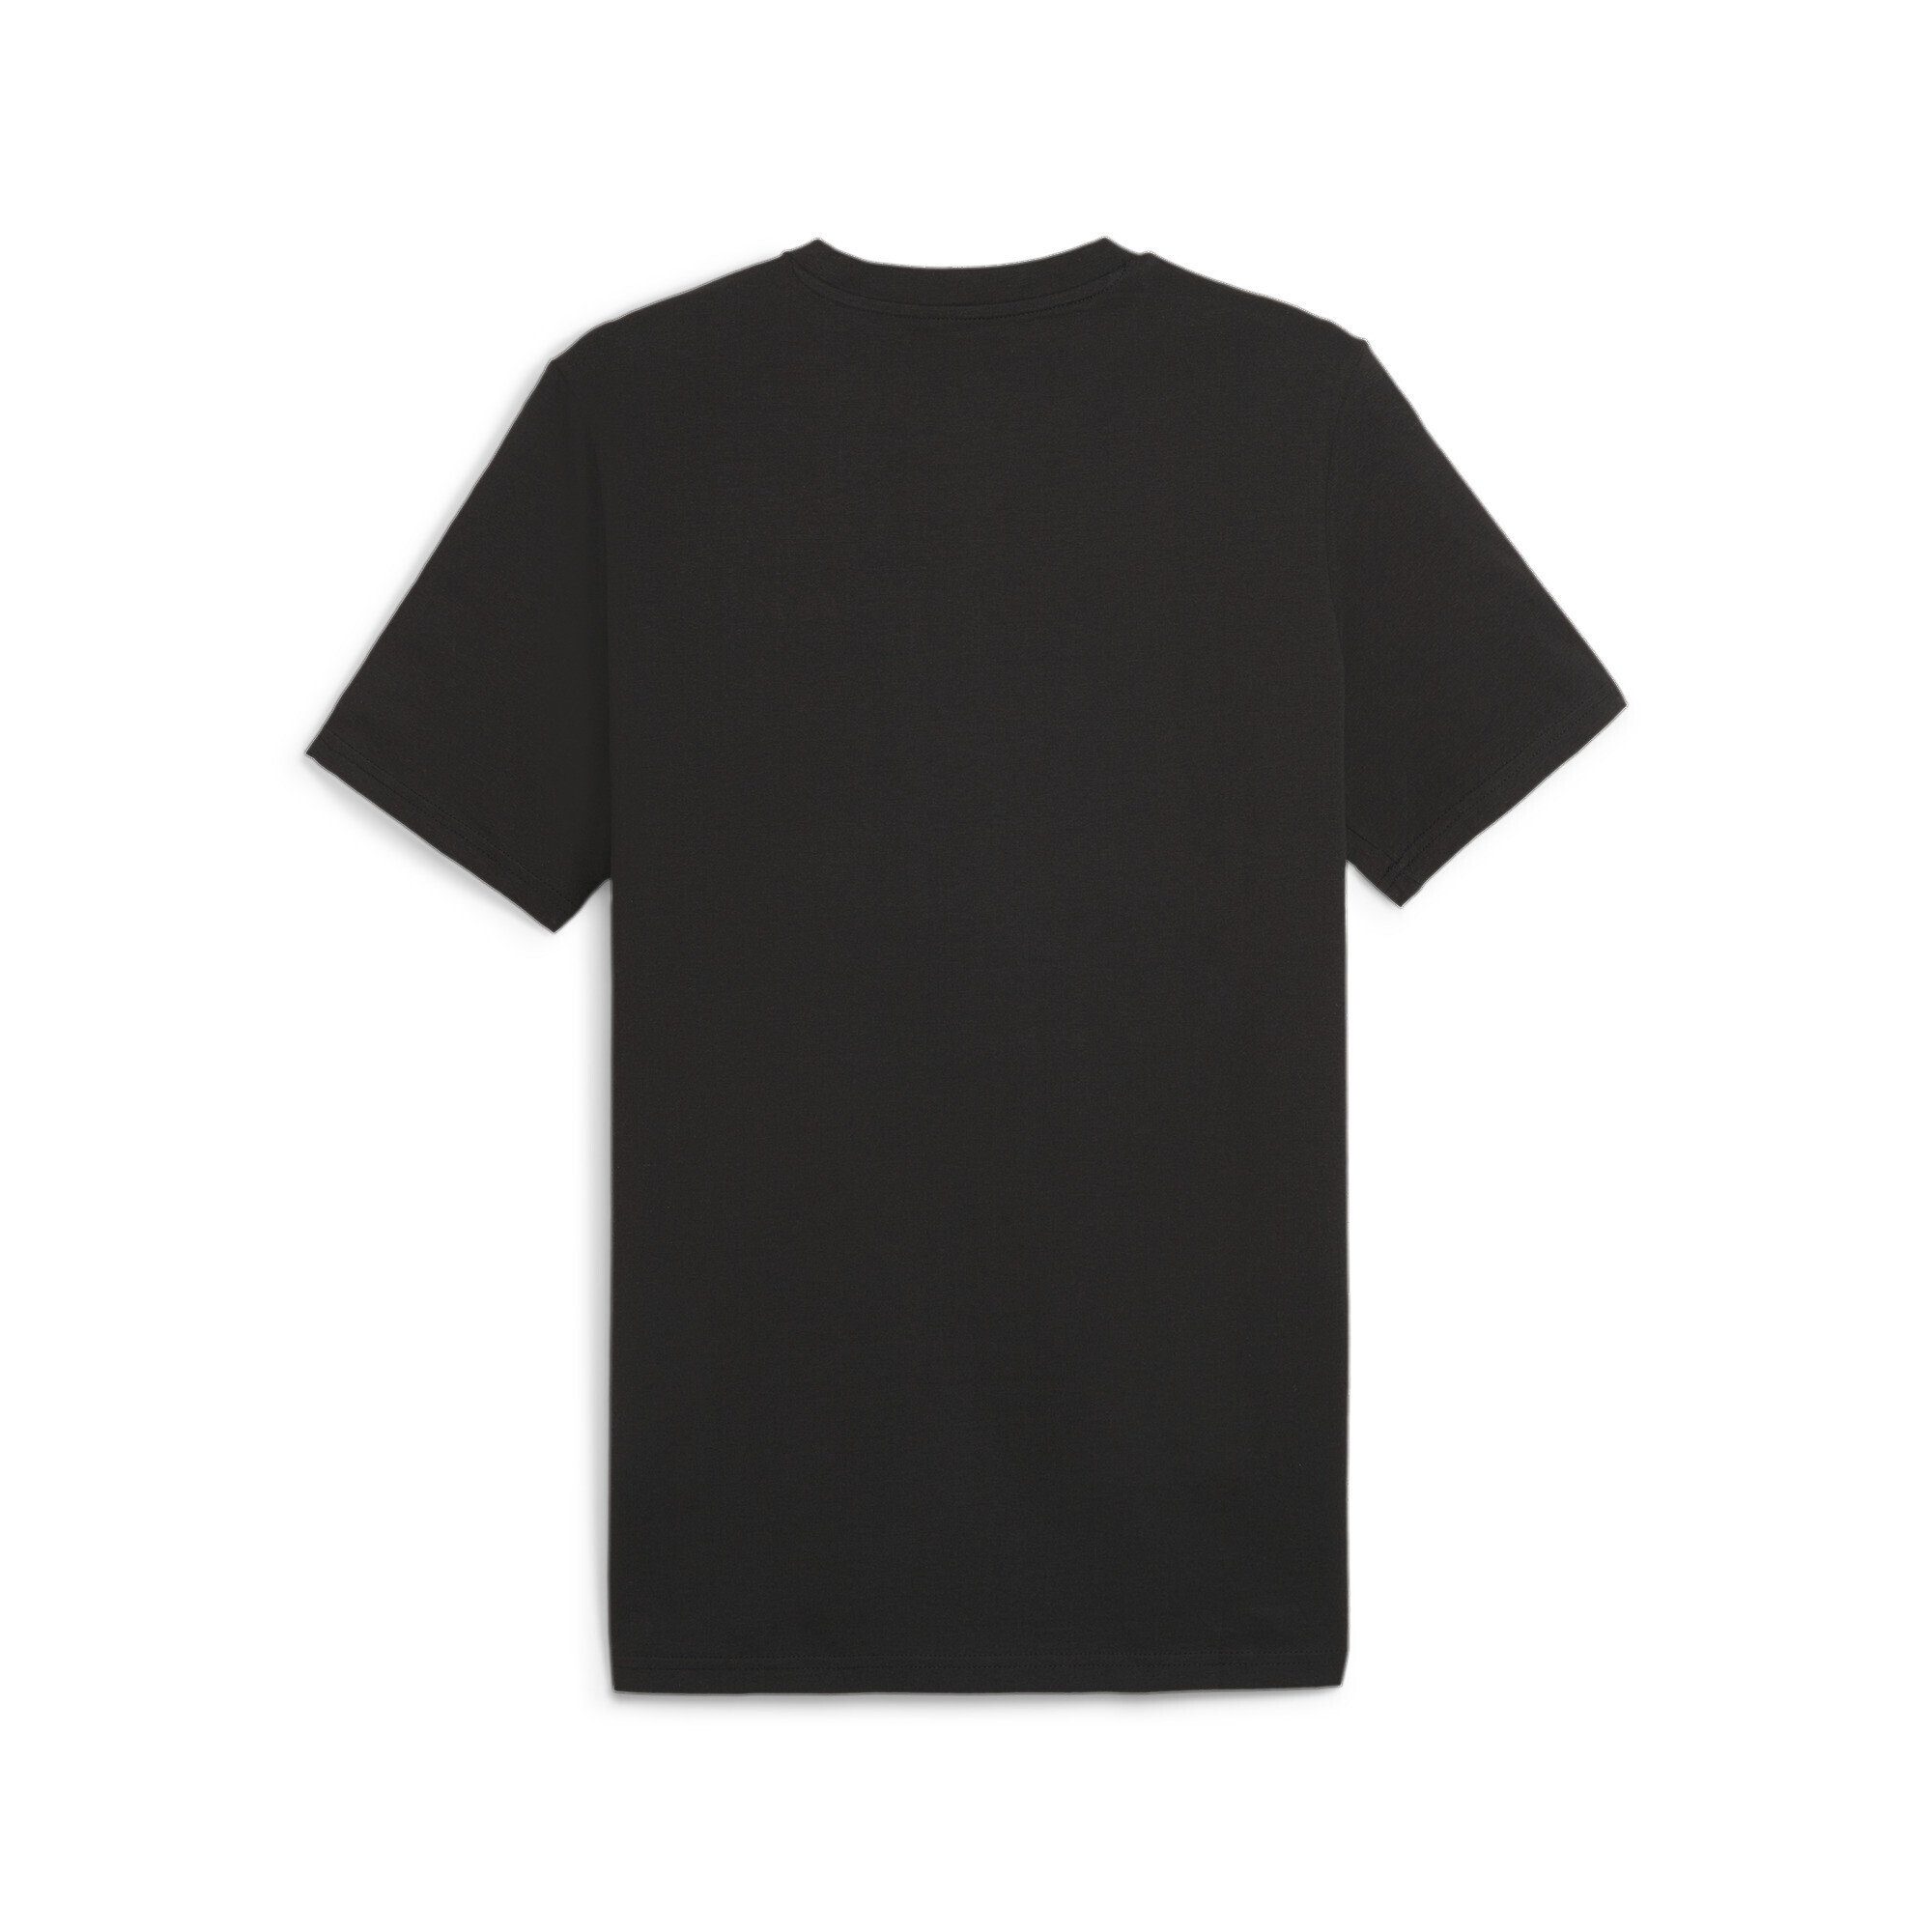 PUMA Better Essentials Black Herren T-Shirt T-Shirt